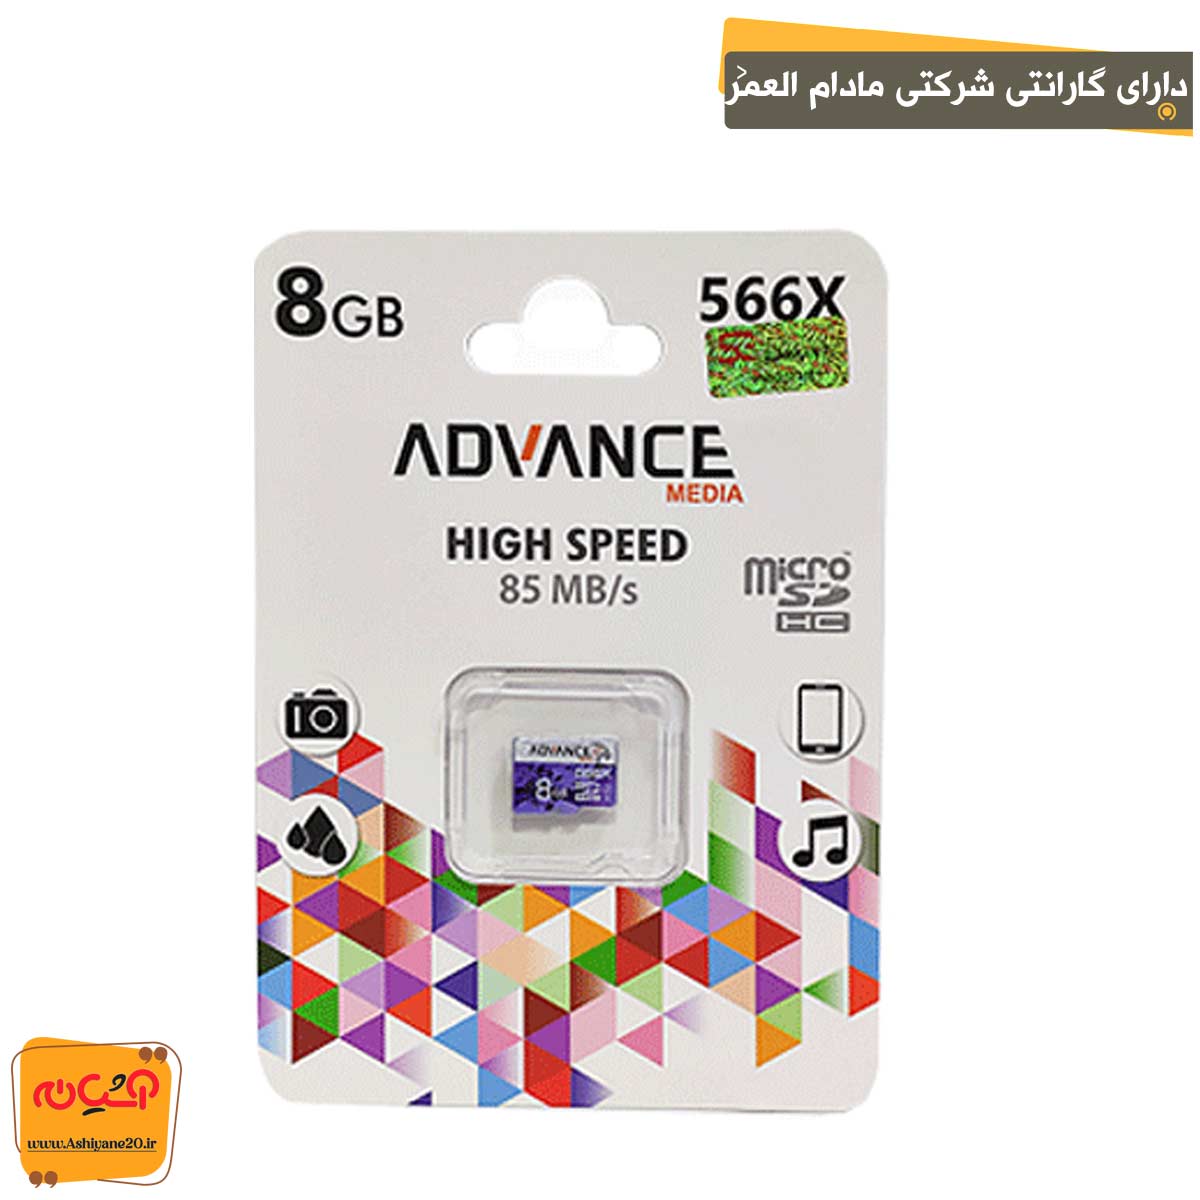 مموری Micro Advance 566x 8GB